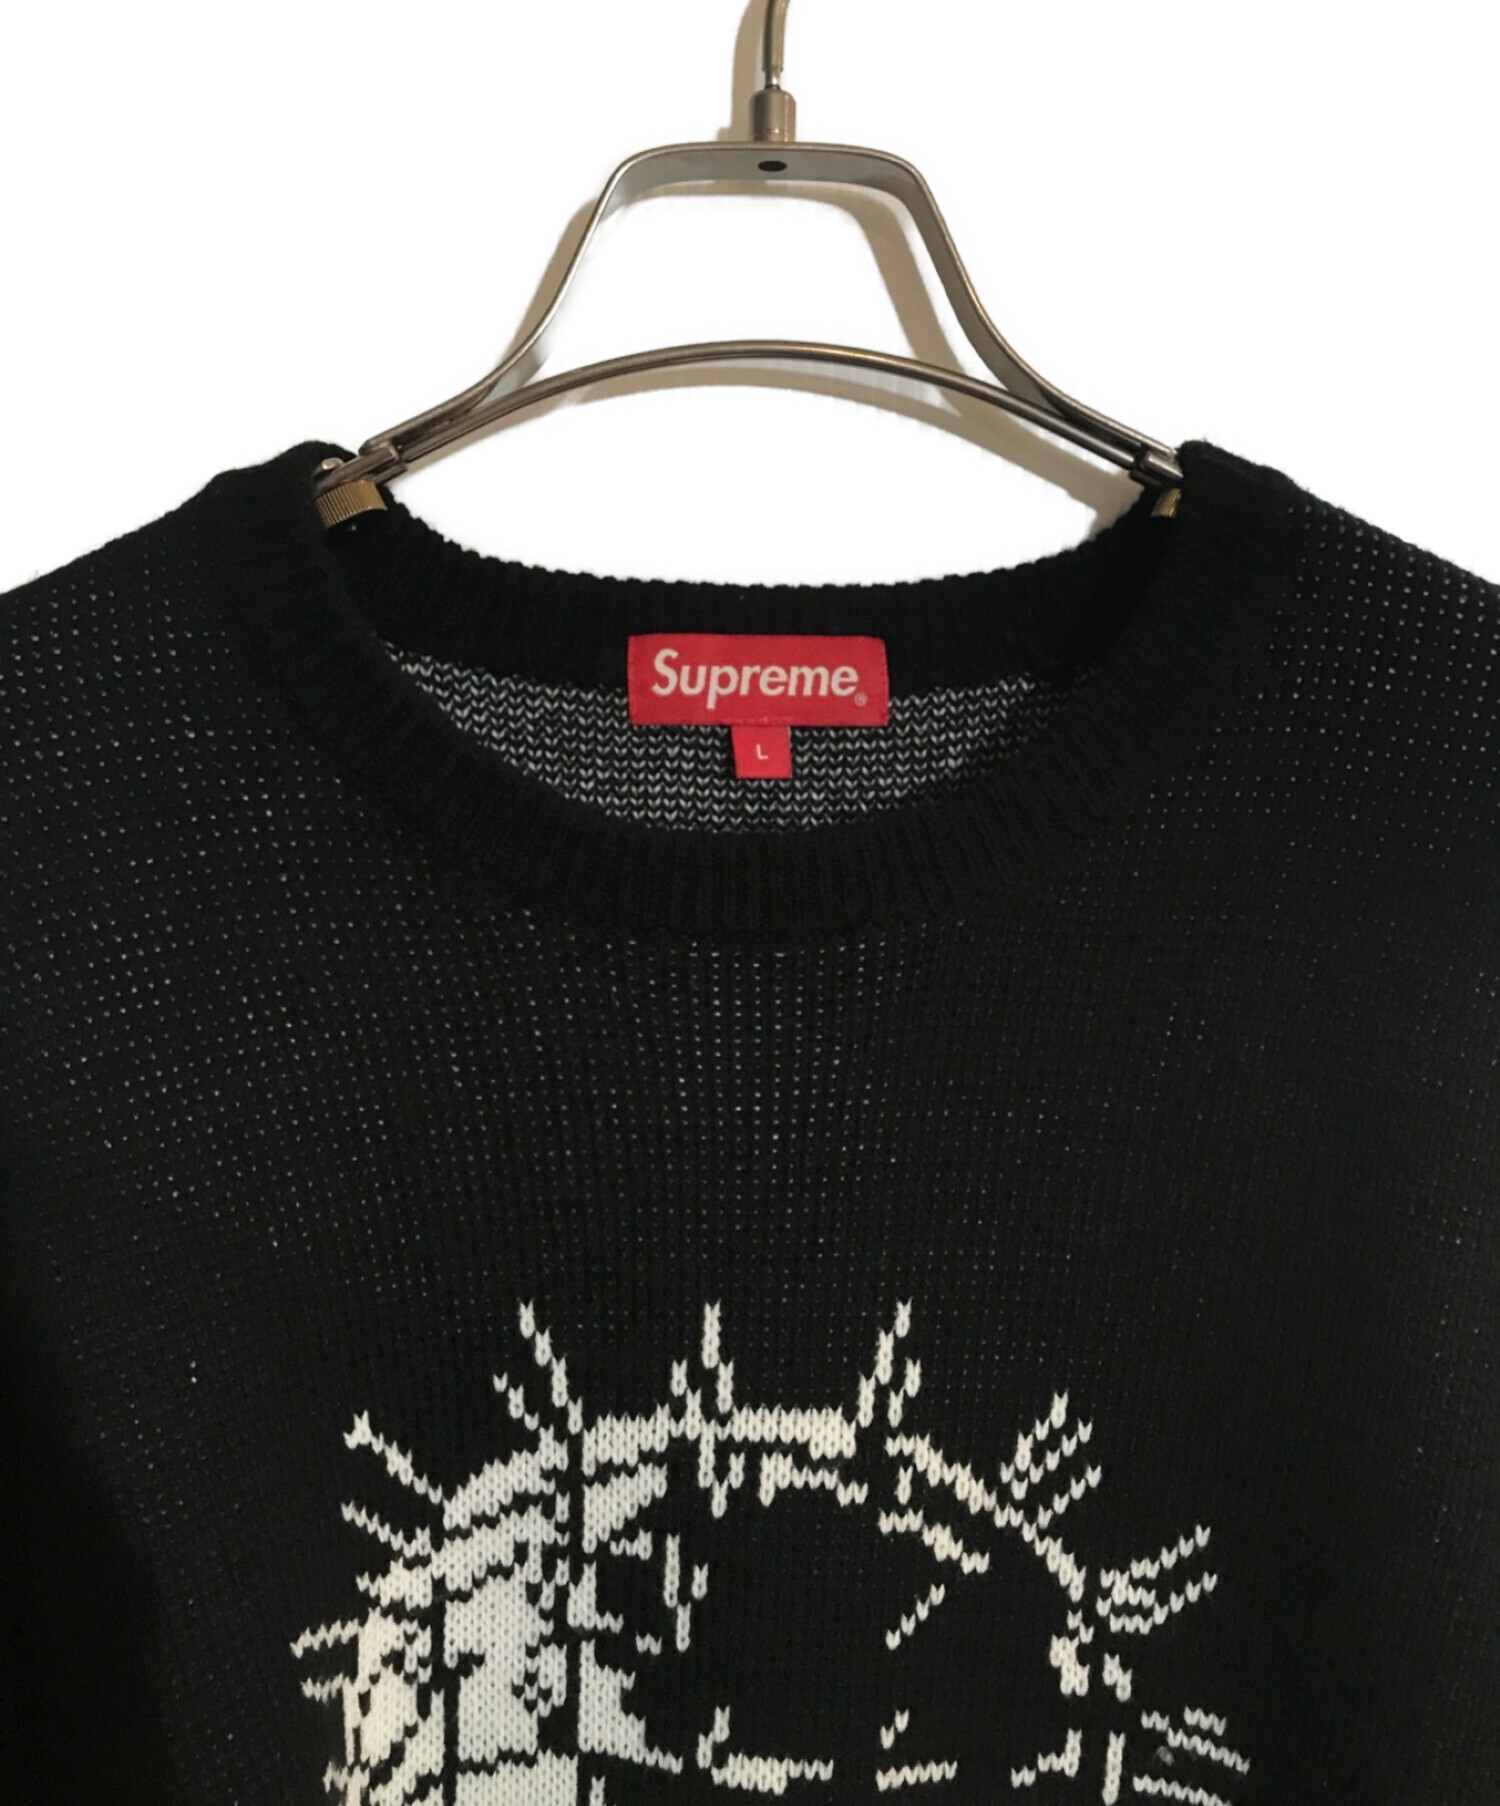 SUPREME (シュプリーム) Hellraiser Sweater/ヘルレイザーセーター ブラック サイズ:SIZE L